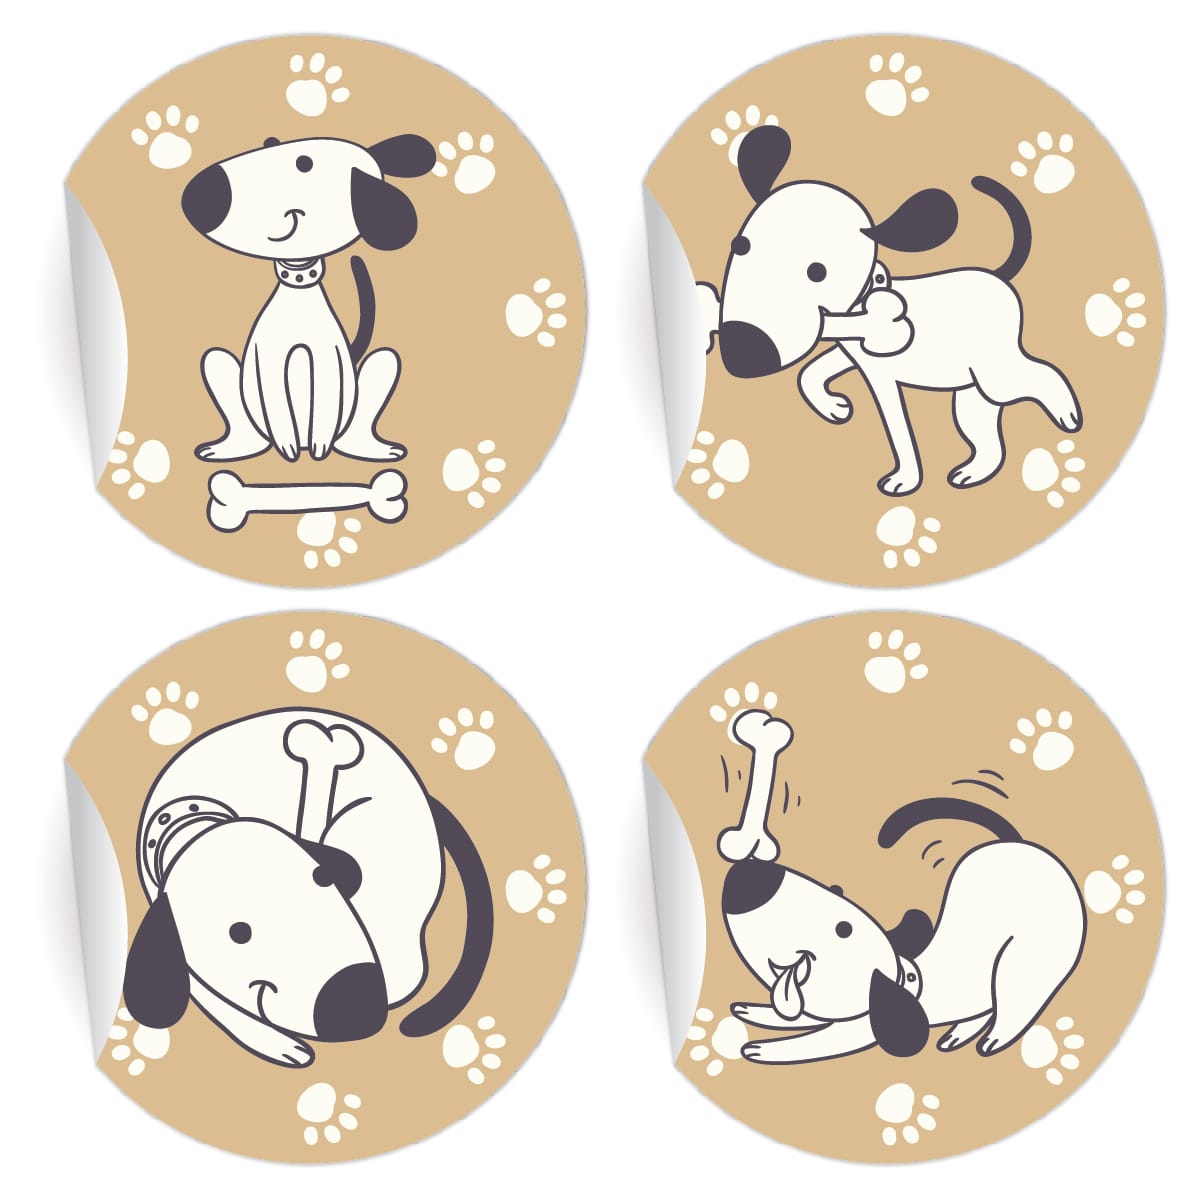 Kartenkaufrausch: Comic Hunde Aufkleber aus unserer Oster Papeterie in beige